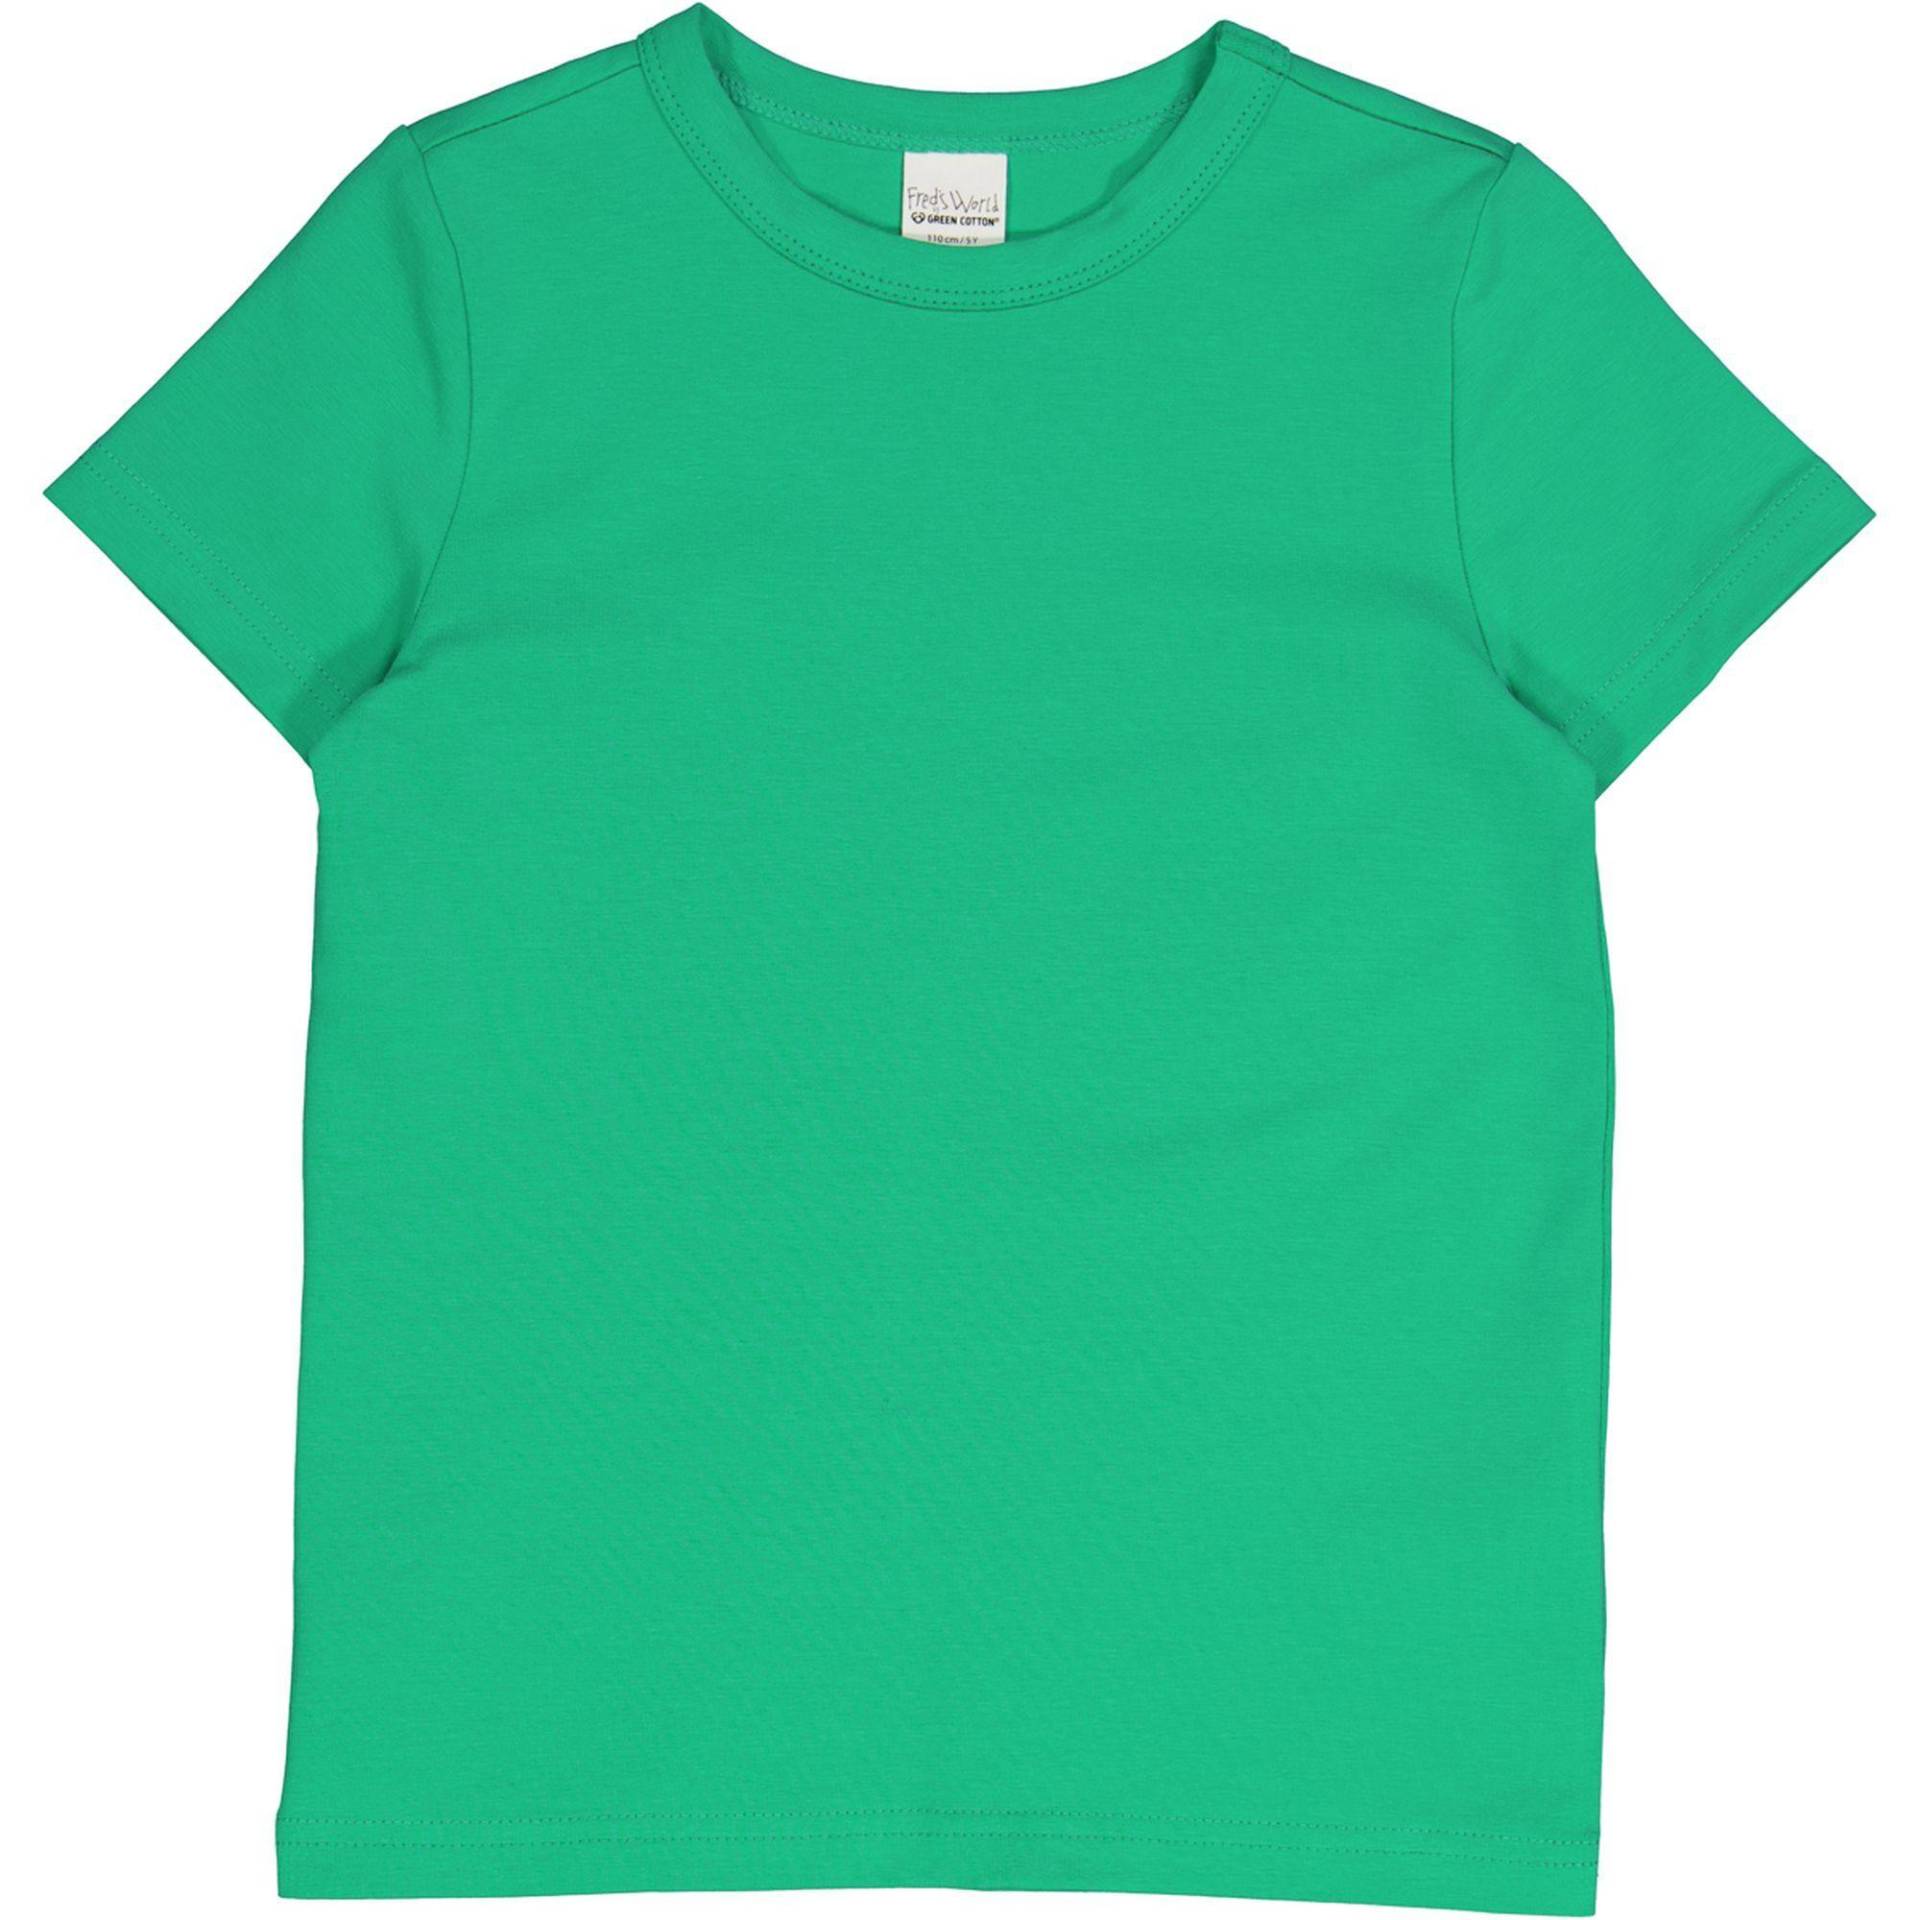 T-shirt Unisex  110 von Fred`s World by Green Cotton